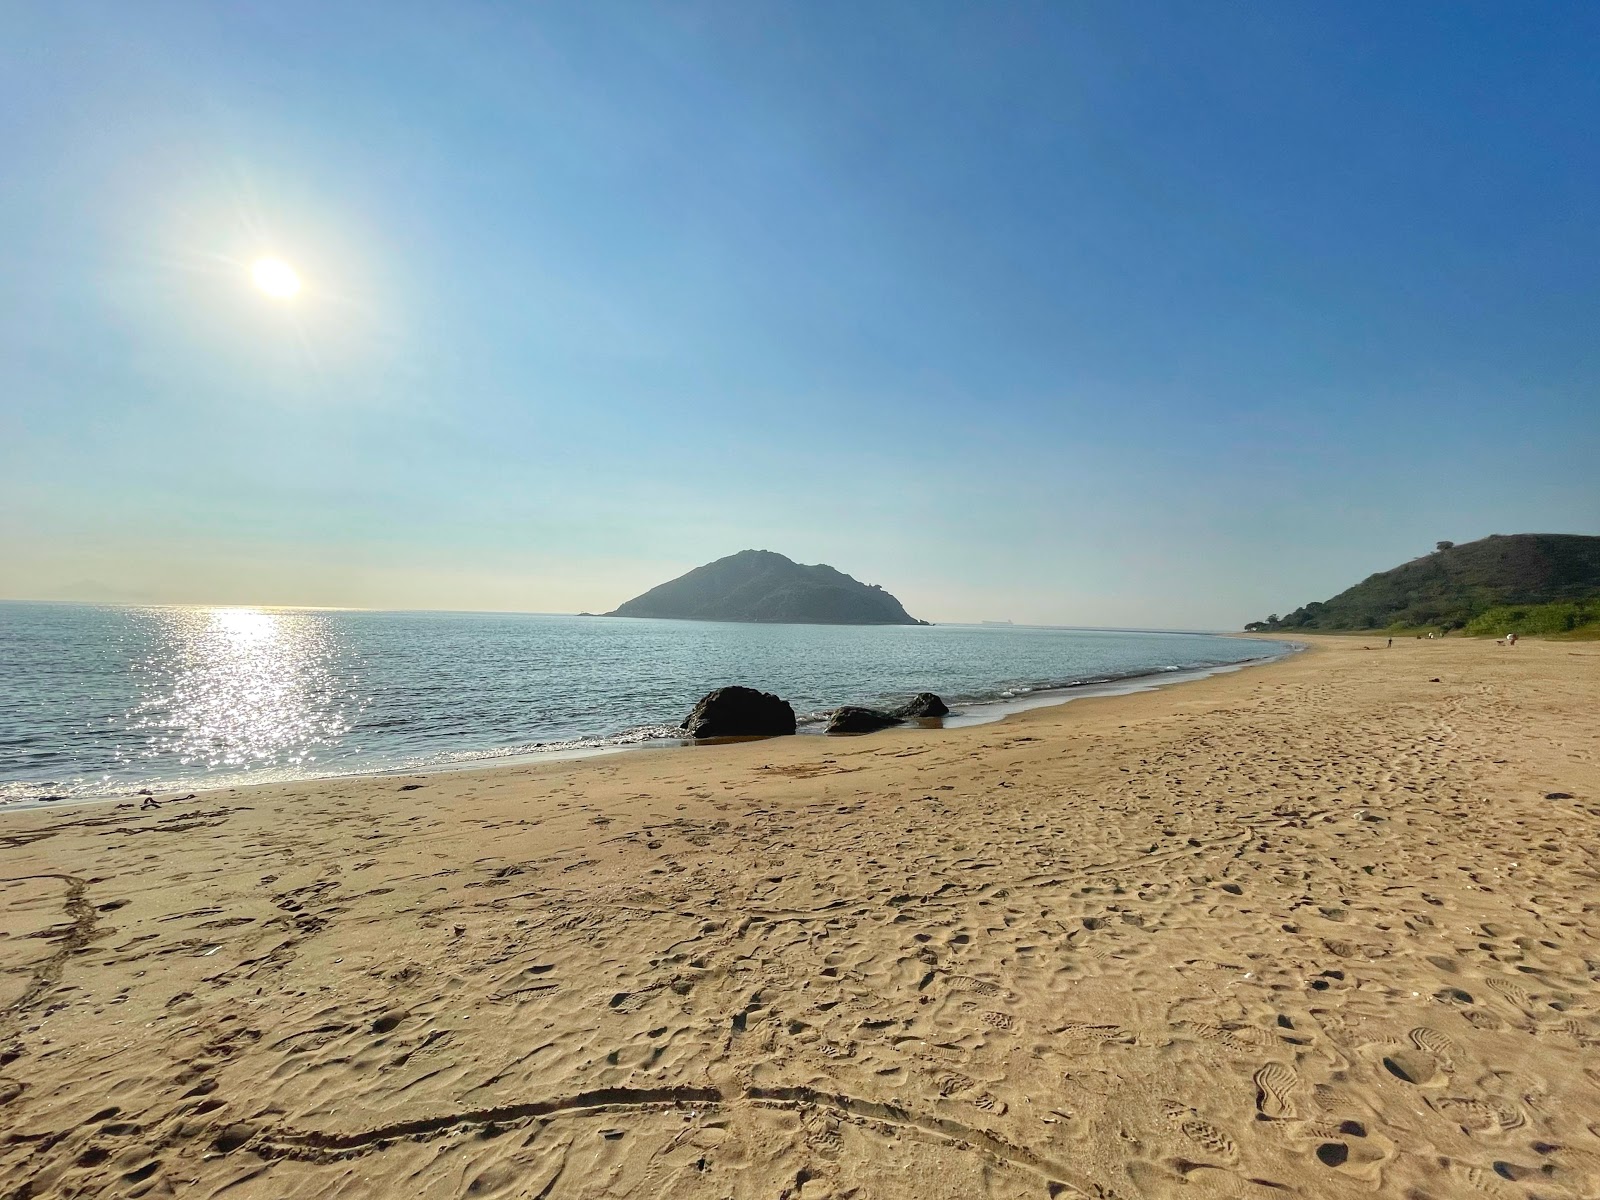 Zdjęcie Tsin Yue Wan z przestronna plaża